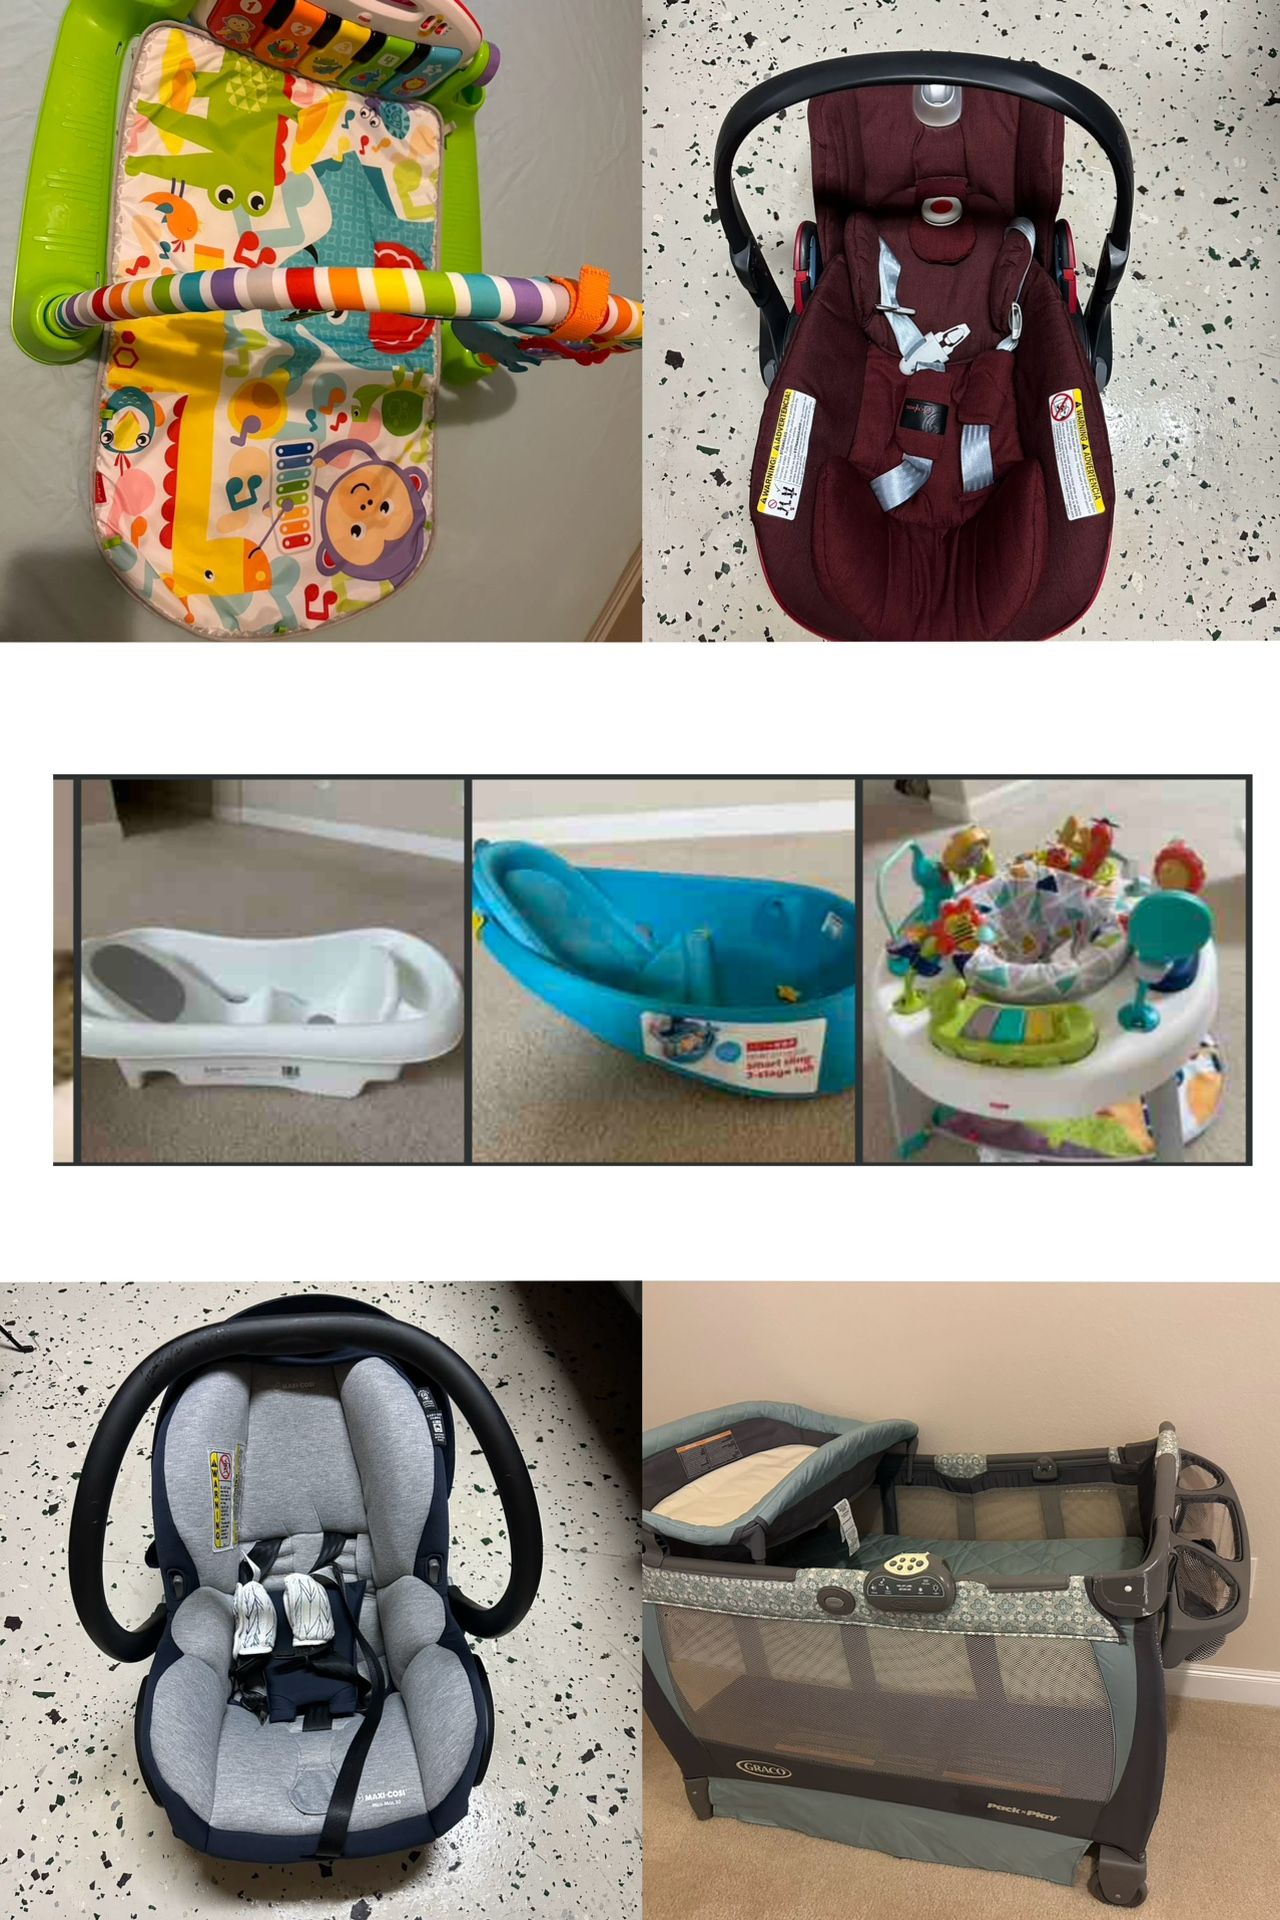 Pack N Play - Toy - Baby Tub